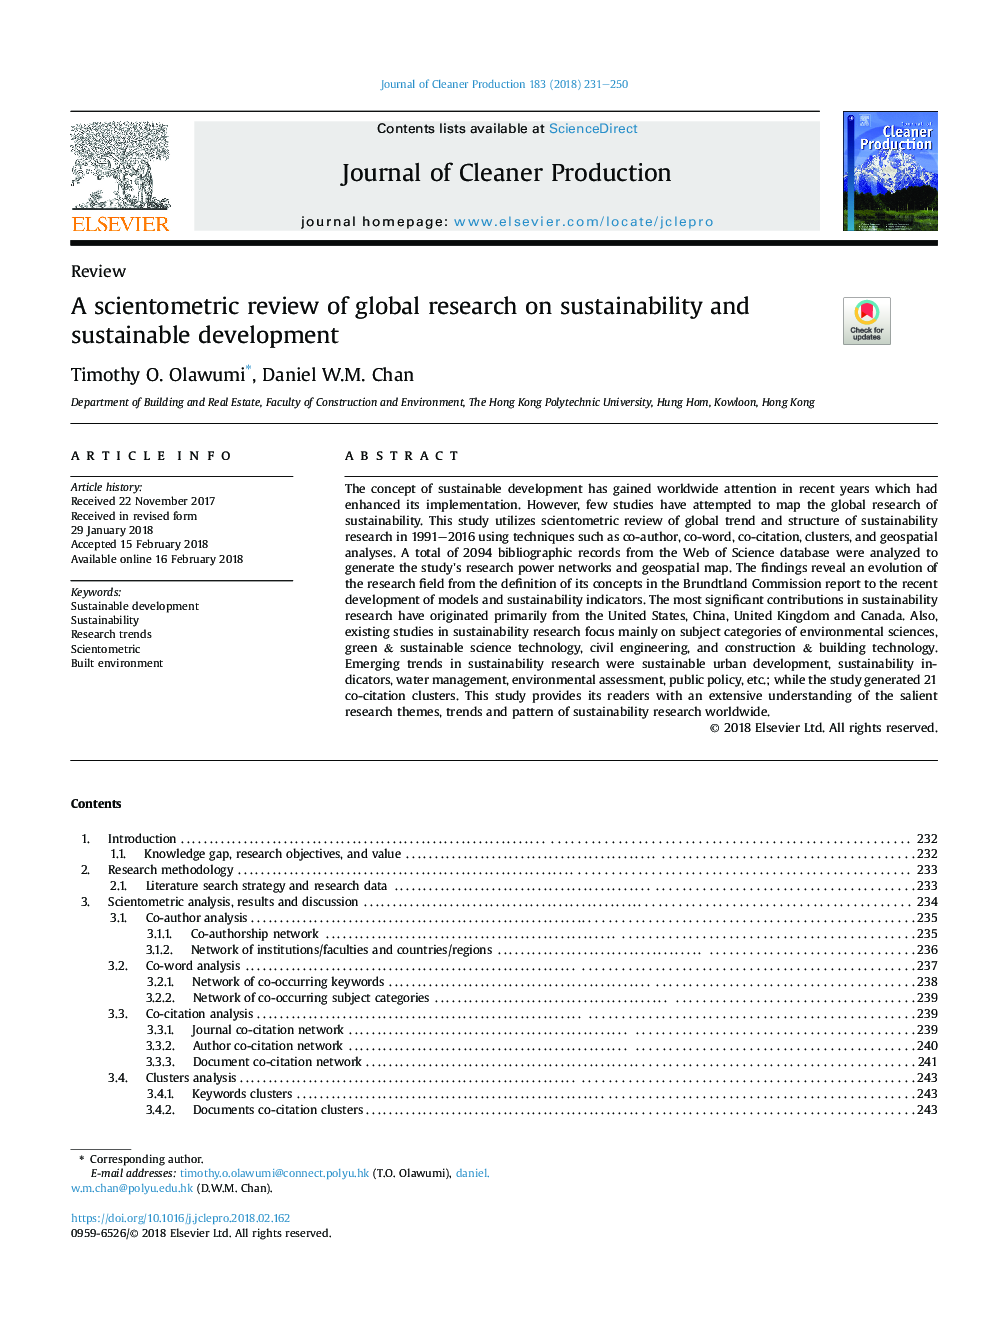 بررسی علمی تحقیق جهانی در مورد پایداری و توسعه پایدار 